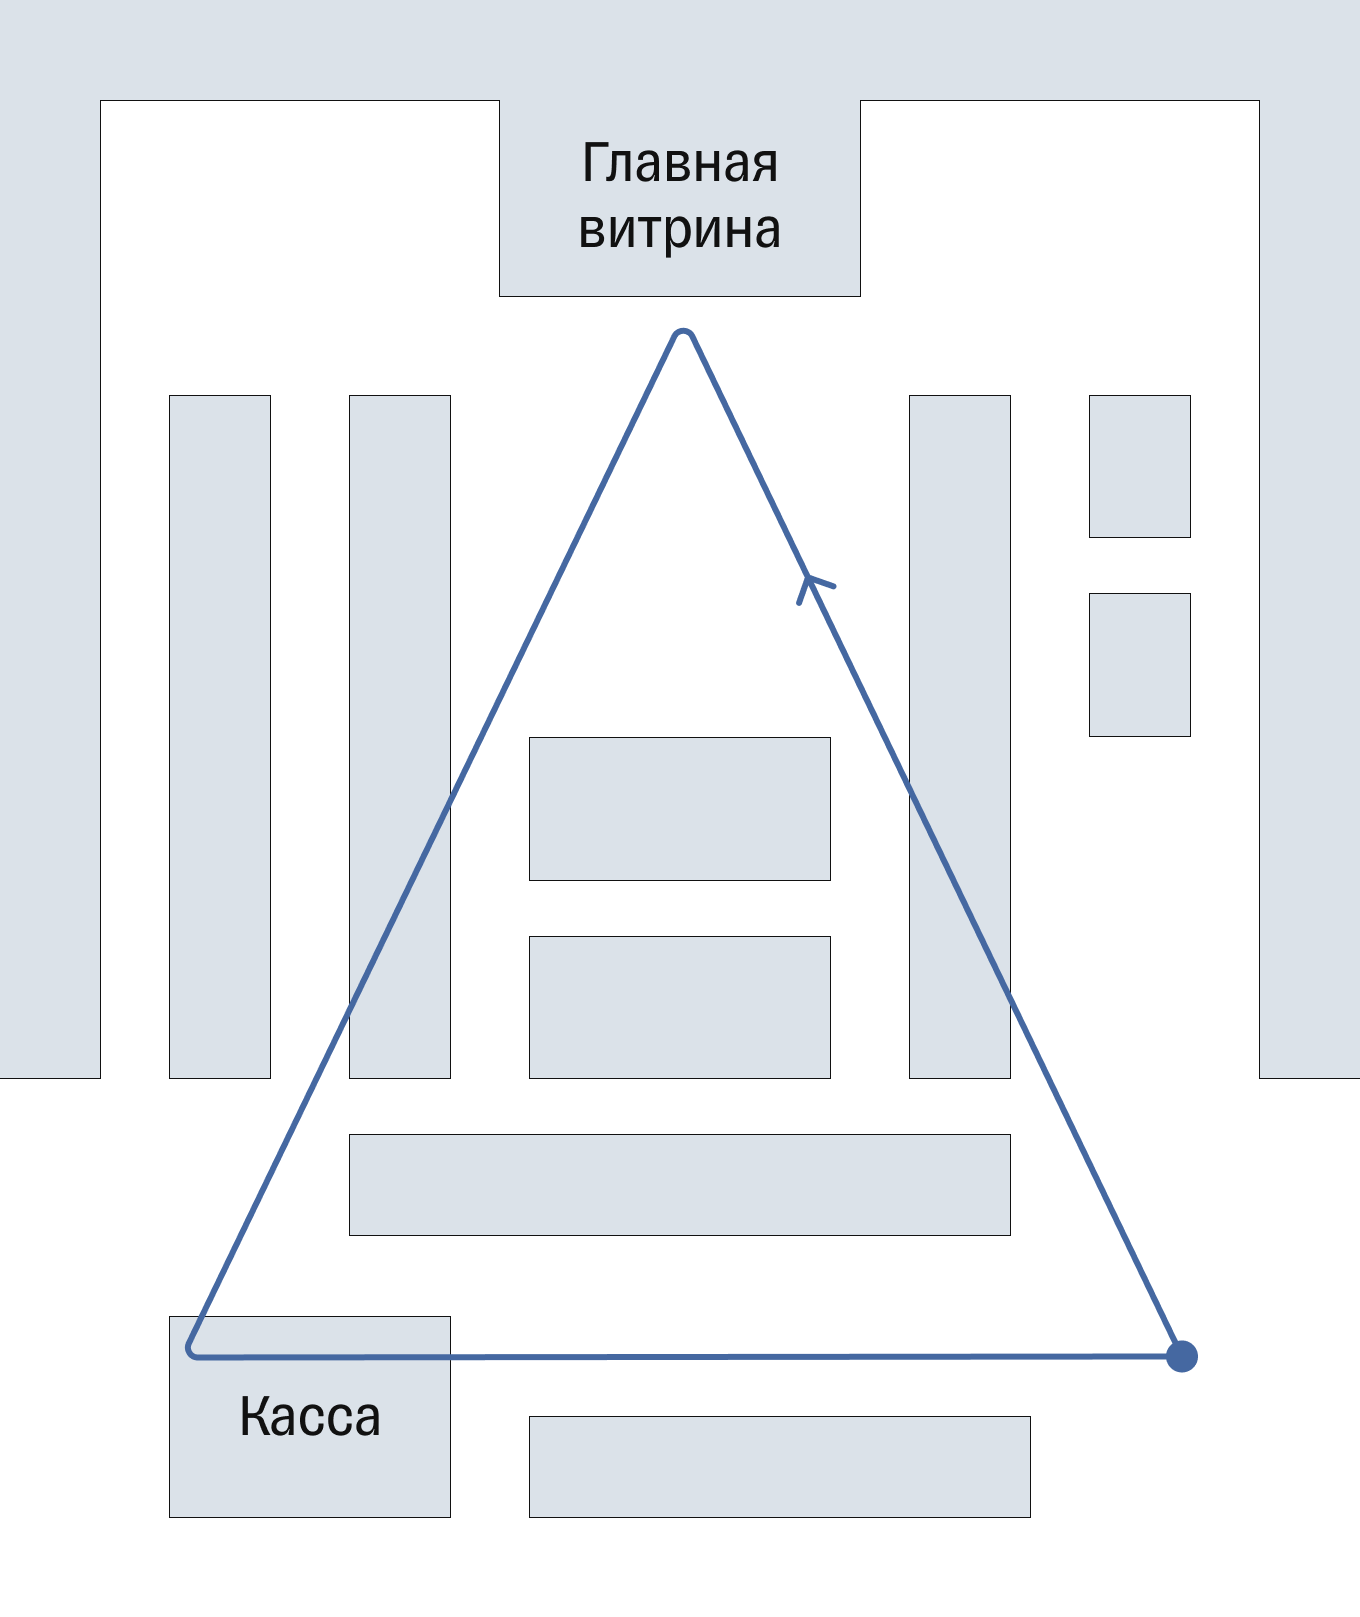 Схема магазина с главной витриной, зоной касс и входом